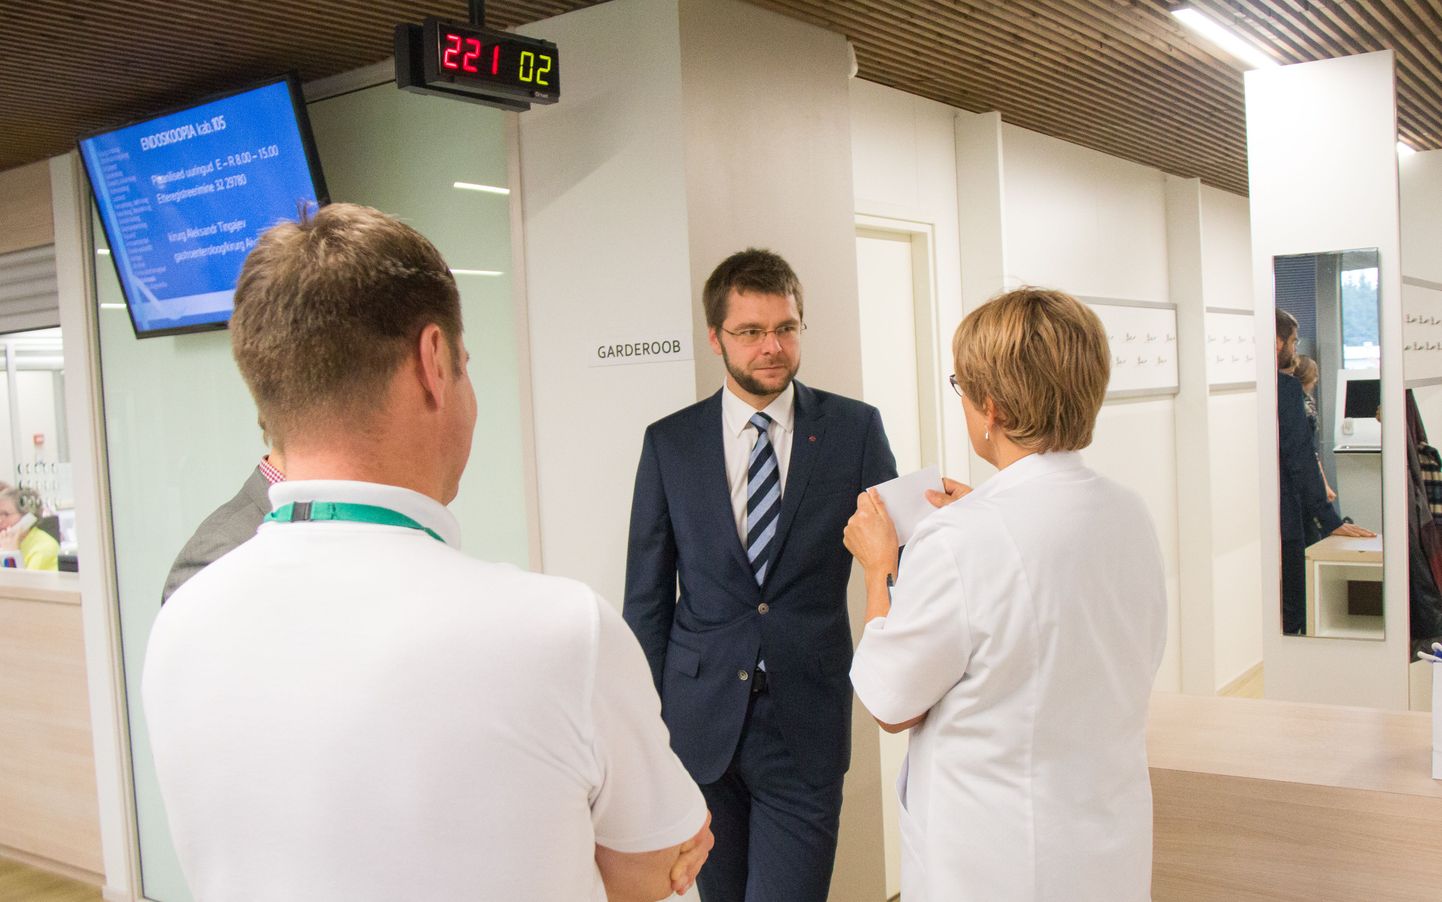 Töö- ja terviseminister Jevgeni Ossinovski on korduvalt pidanud meedikutega tervishoiurahastamise üle läbi rääkima.